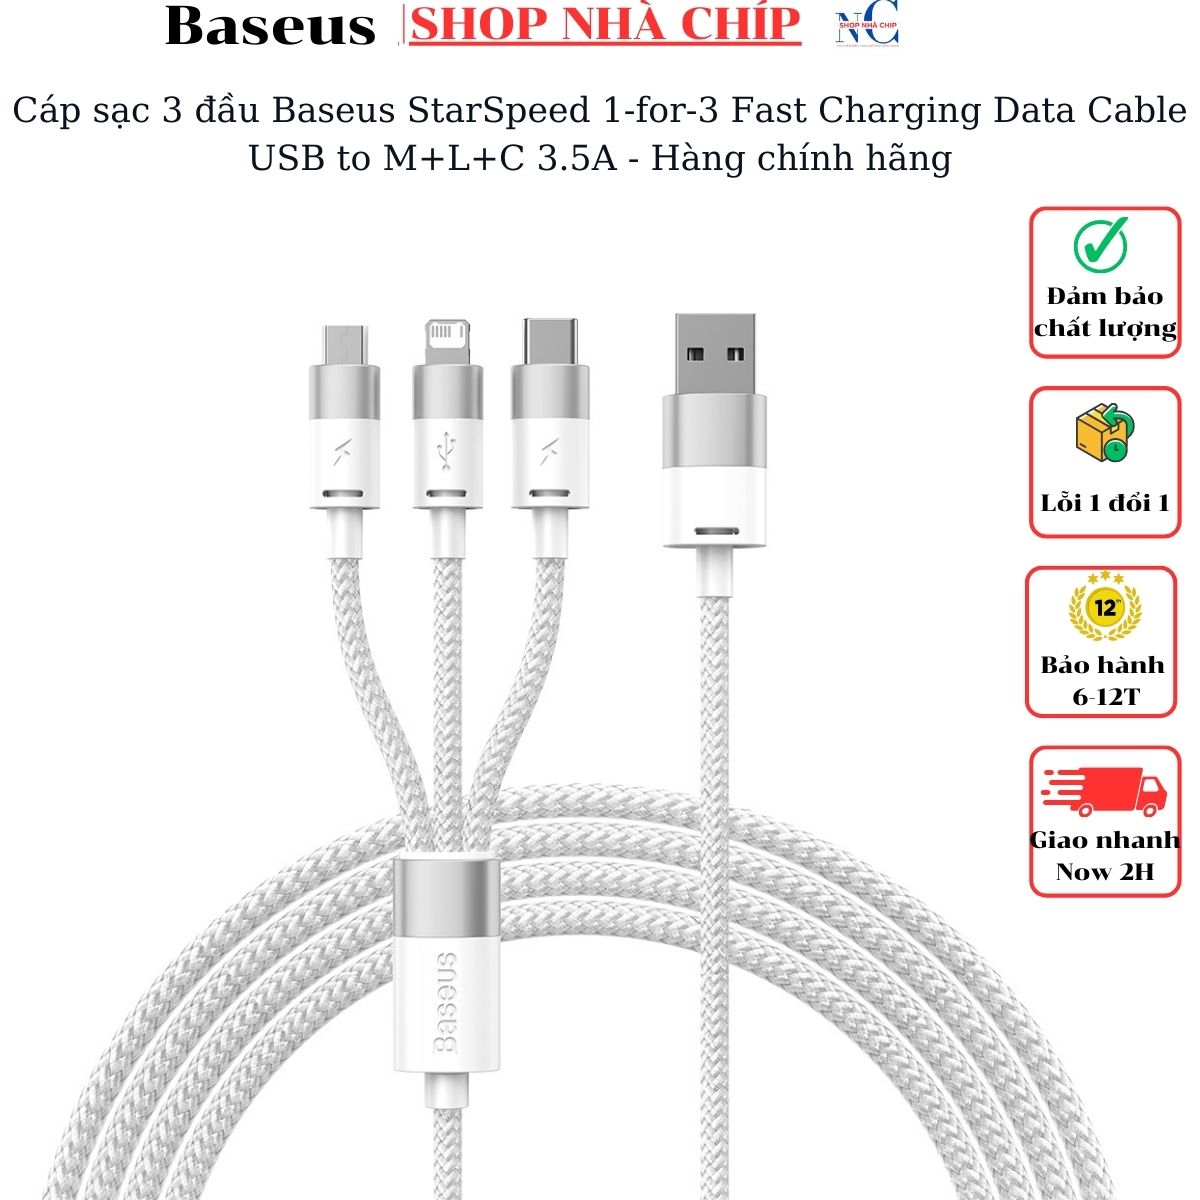 Cáp sạc 3 đầu Baseus StarSpeed 1 for 3 Fast Charging Data Cable USB to M+L+C 3.5A - Hàng chính hãng